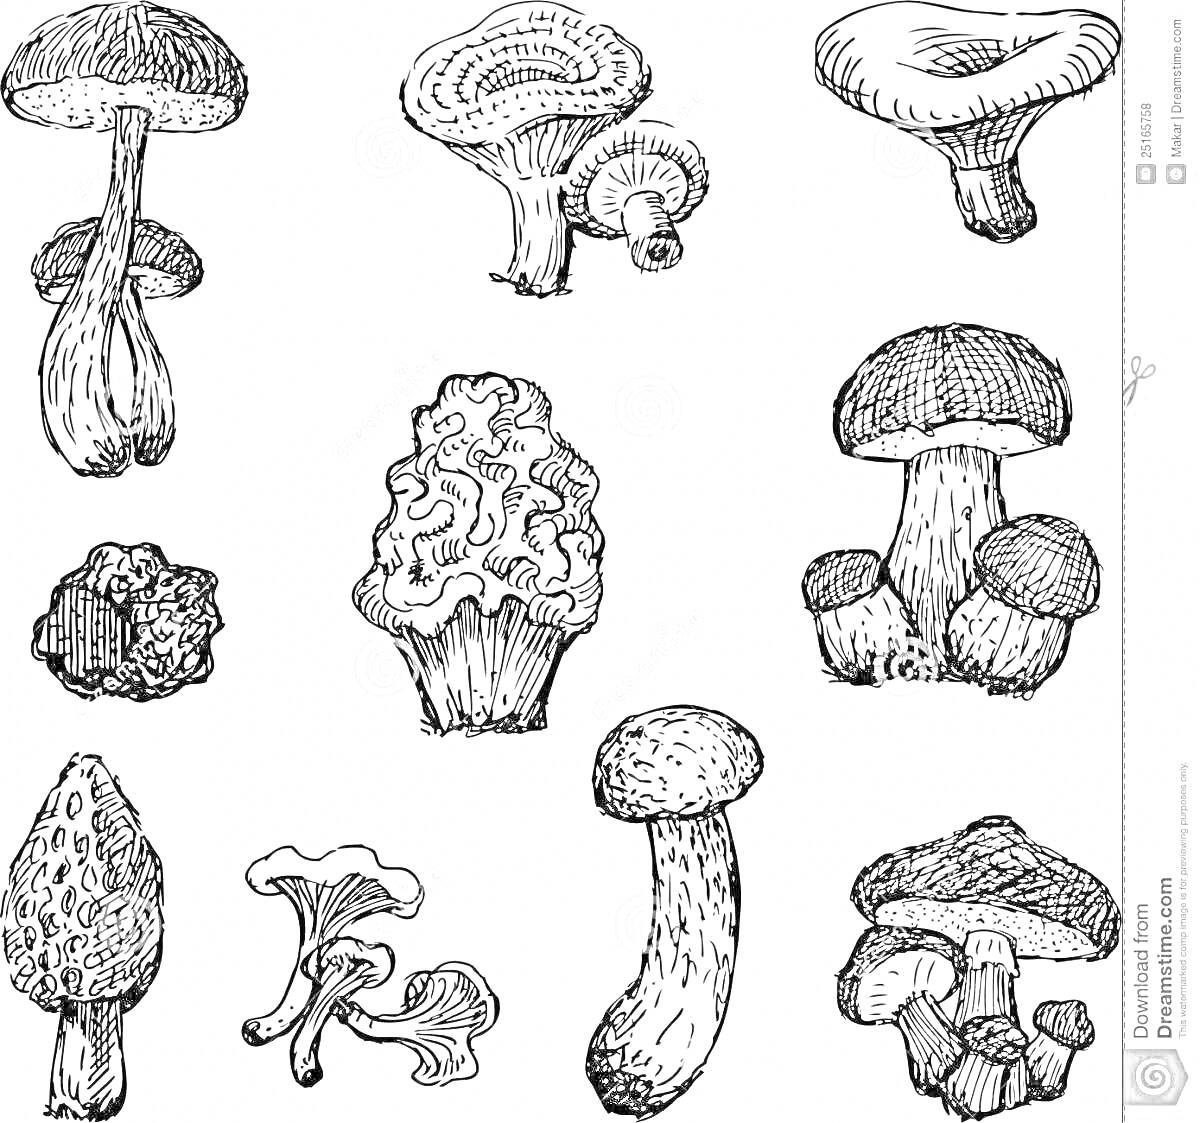 Раскраска Грибы - съедобные и ядовитые: грибы разных видов в черно-белых линиях